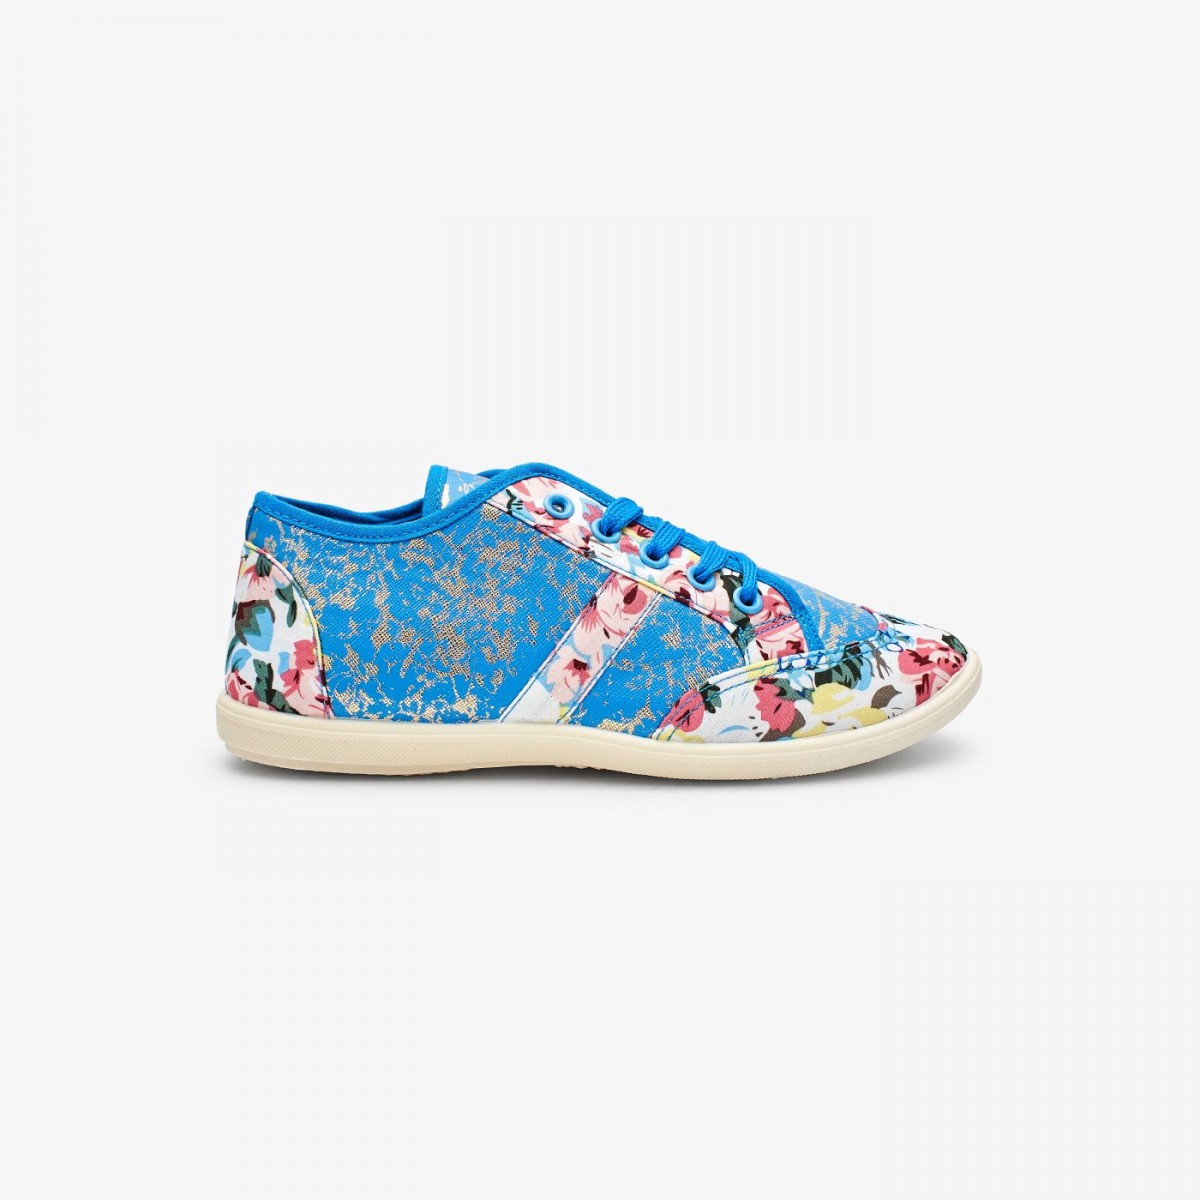 /2019/08/liza-floral-ladies-shoes-lz-ca-0164-blue-image2.jpeg